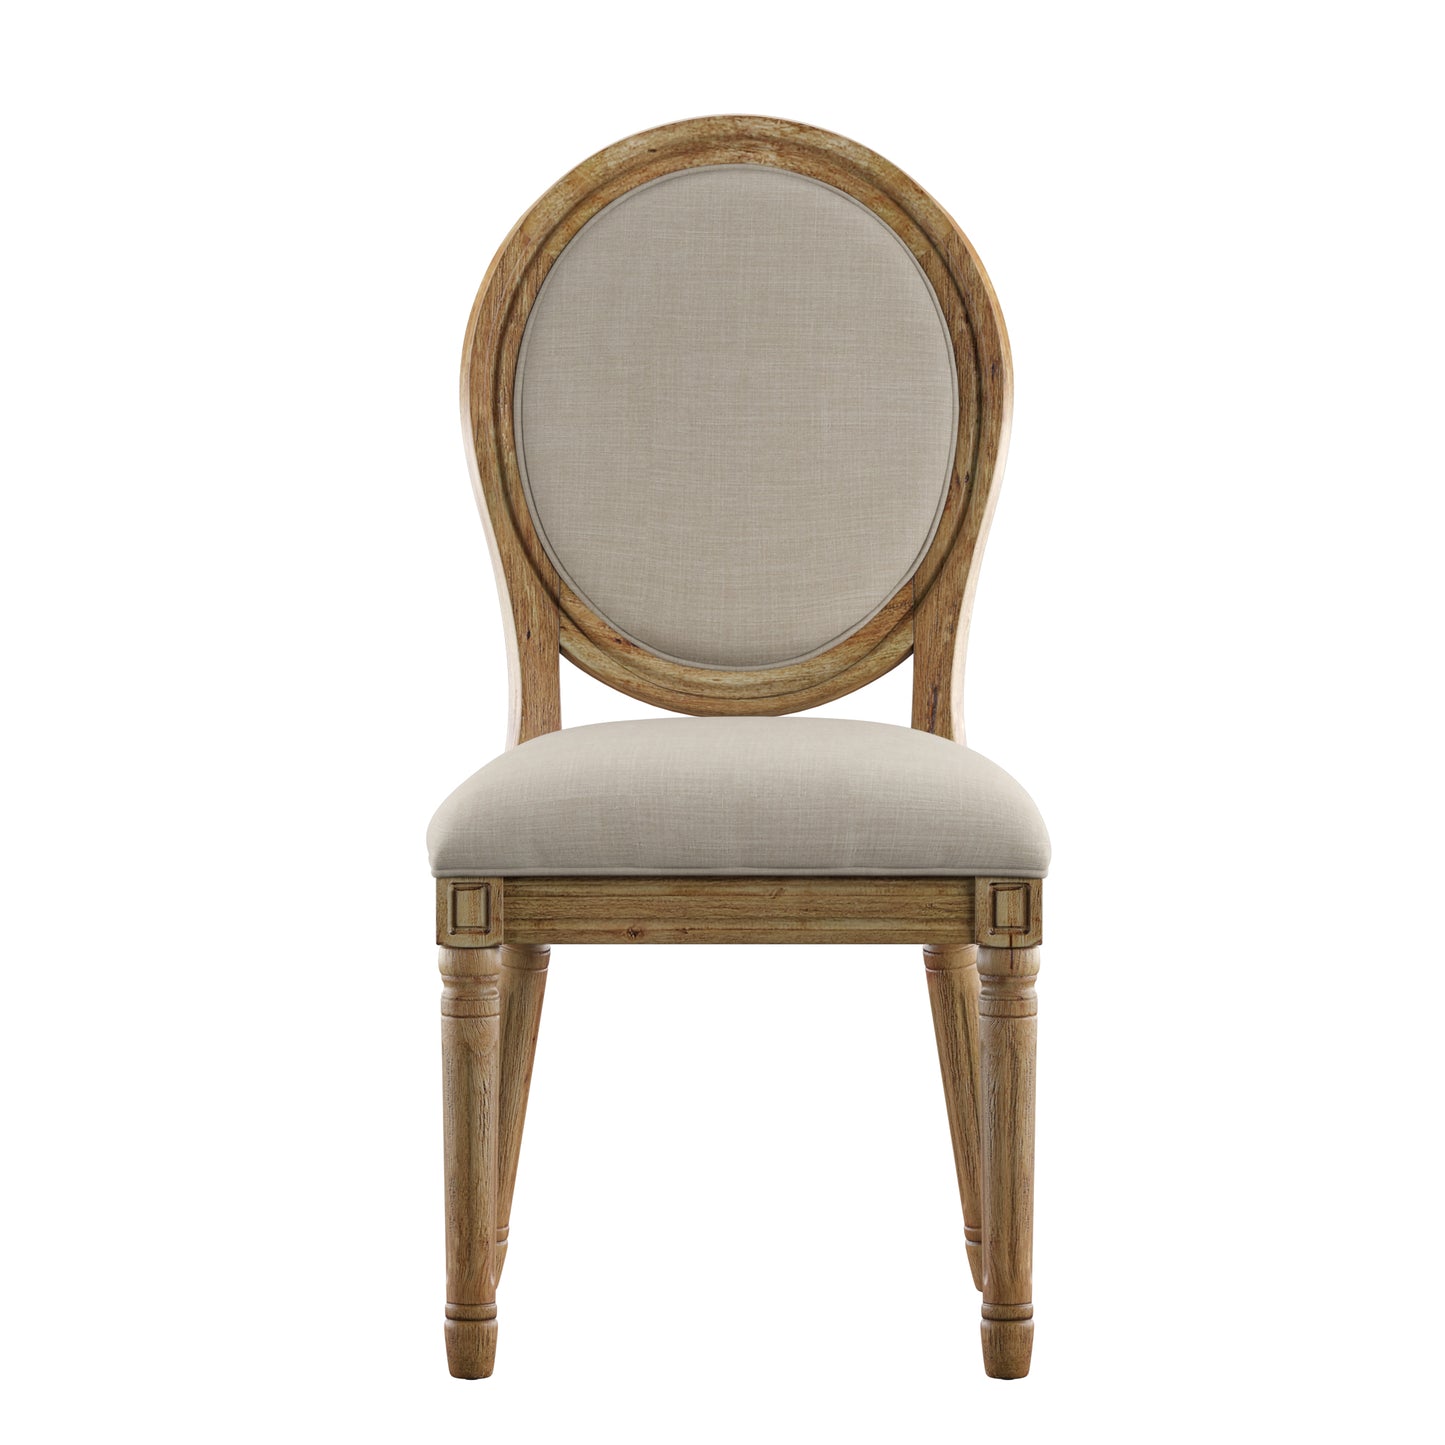 Round 5-Piece Dining Set - Beige Linen, Round Chair Backs